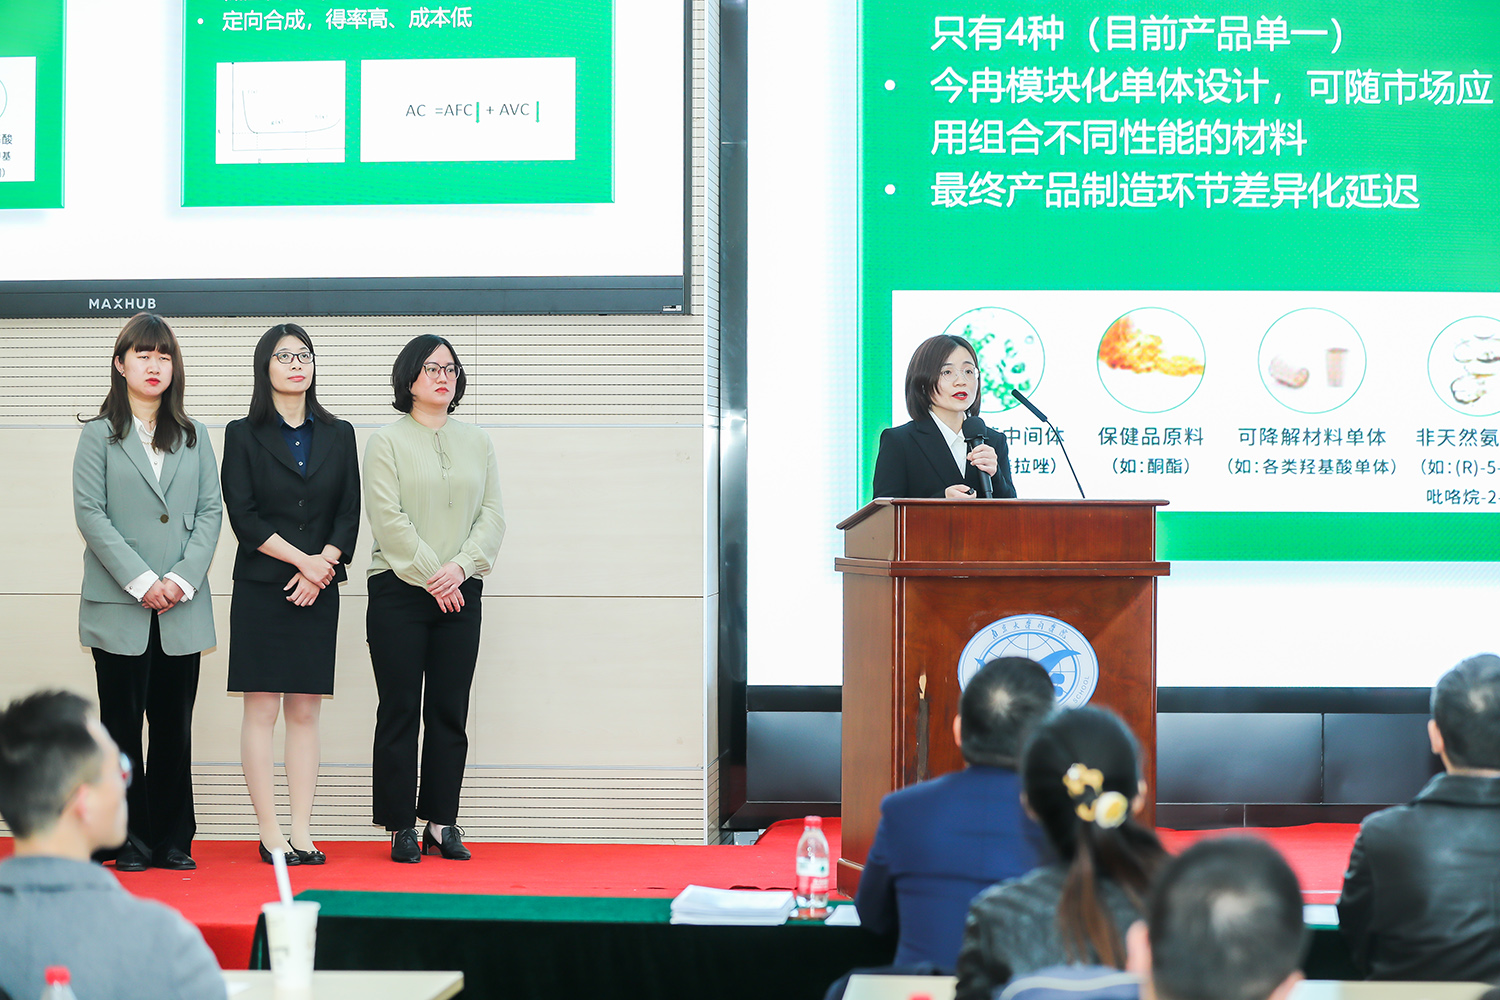 الجائزة الأولى!فازت شركة Jinran Biotechnology بالبطولة في مسابقة NTU MBA لريادة الأعمال لعام 2023